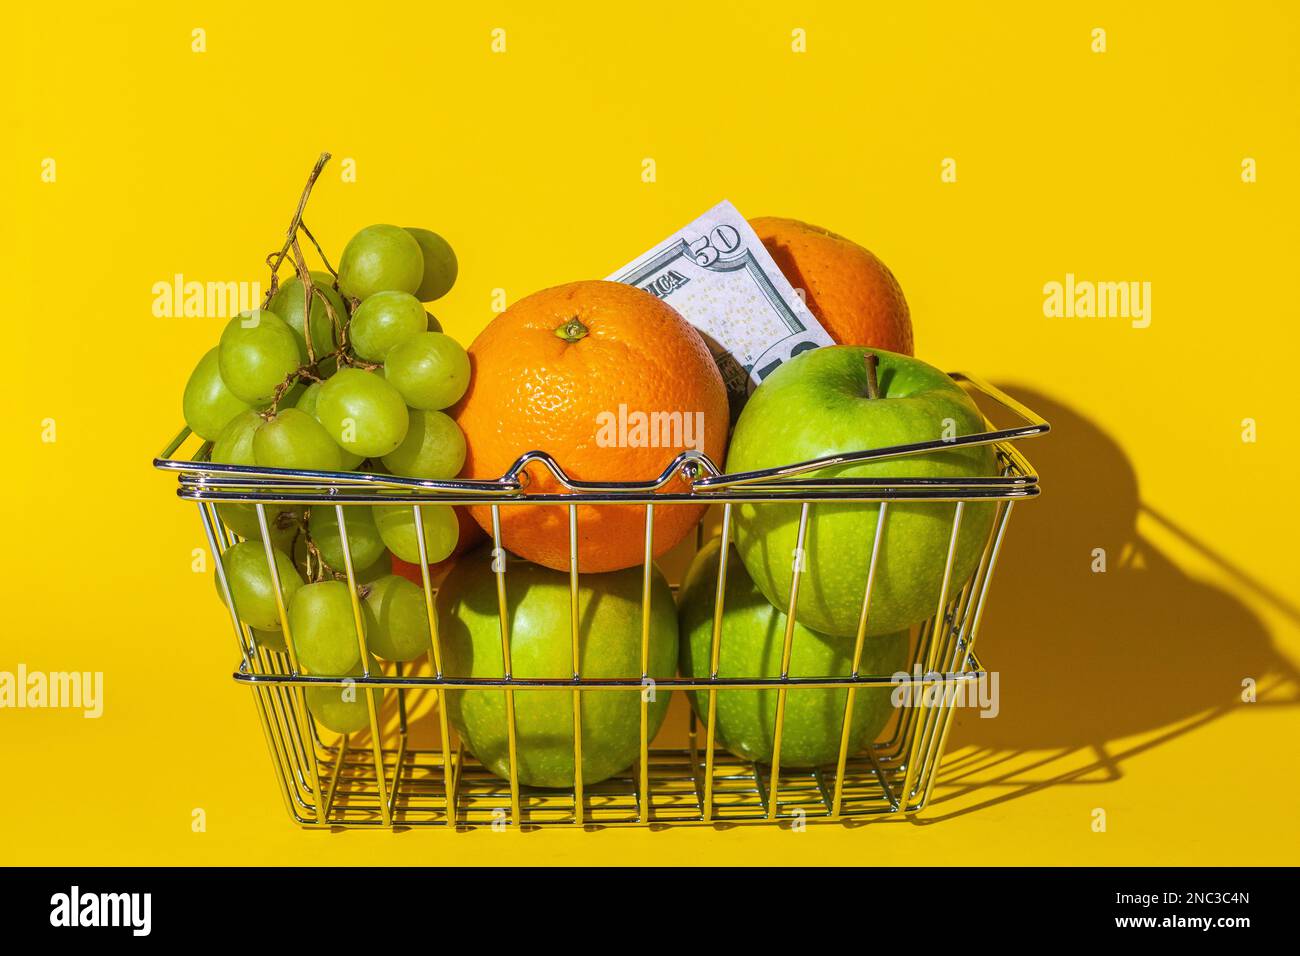 cestino supermercato carrello con frutta e dollari, frutta per cibo e denaro, carta rotonda multicolore, si trovano in un cestino sulla superficie del giallo Foto Stock